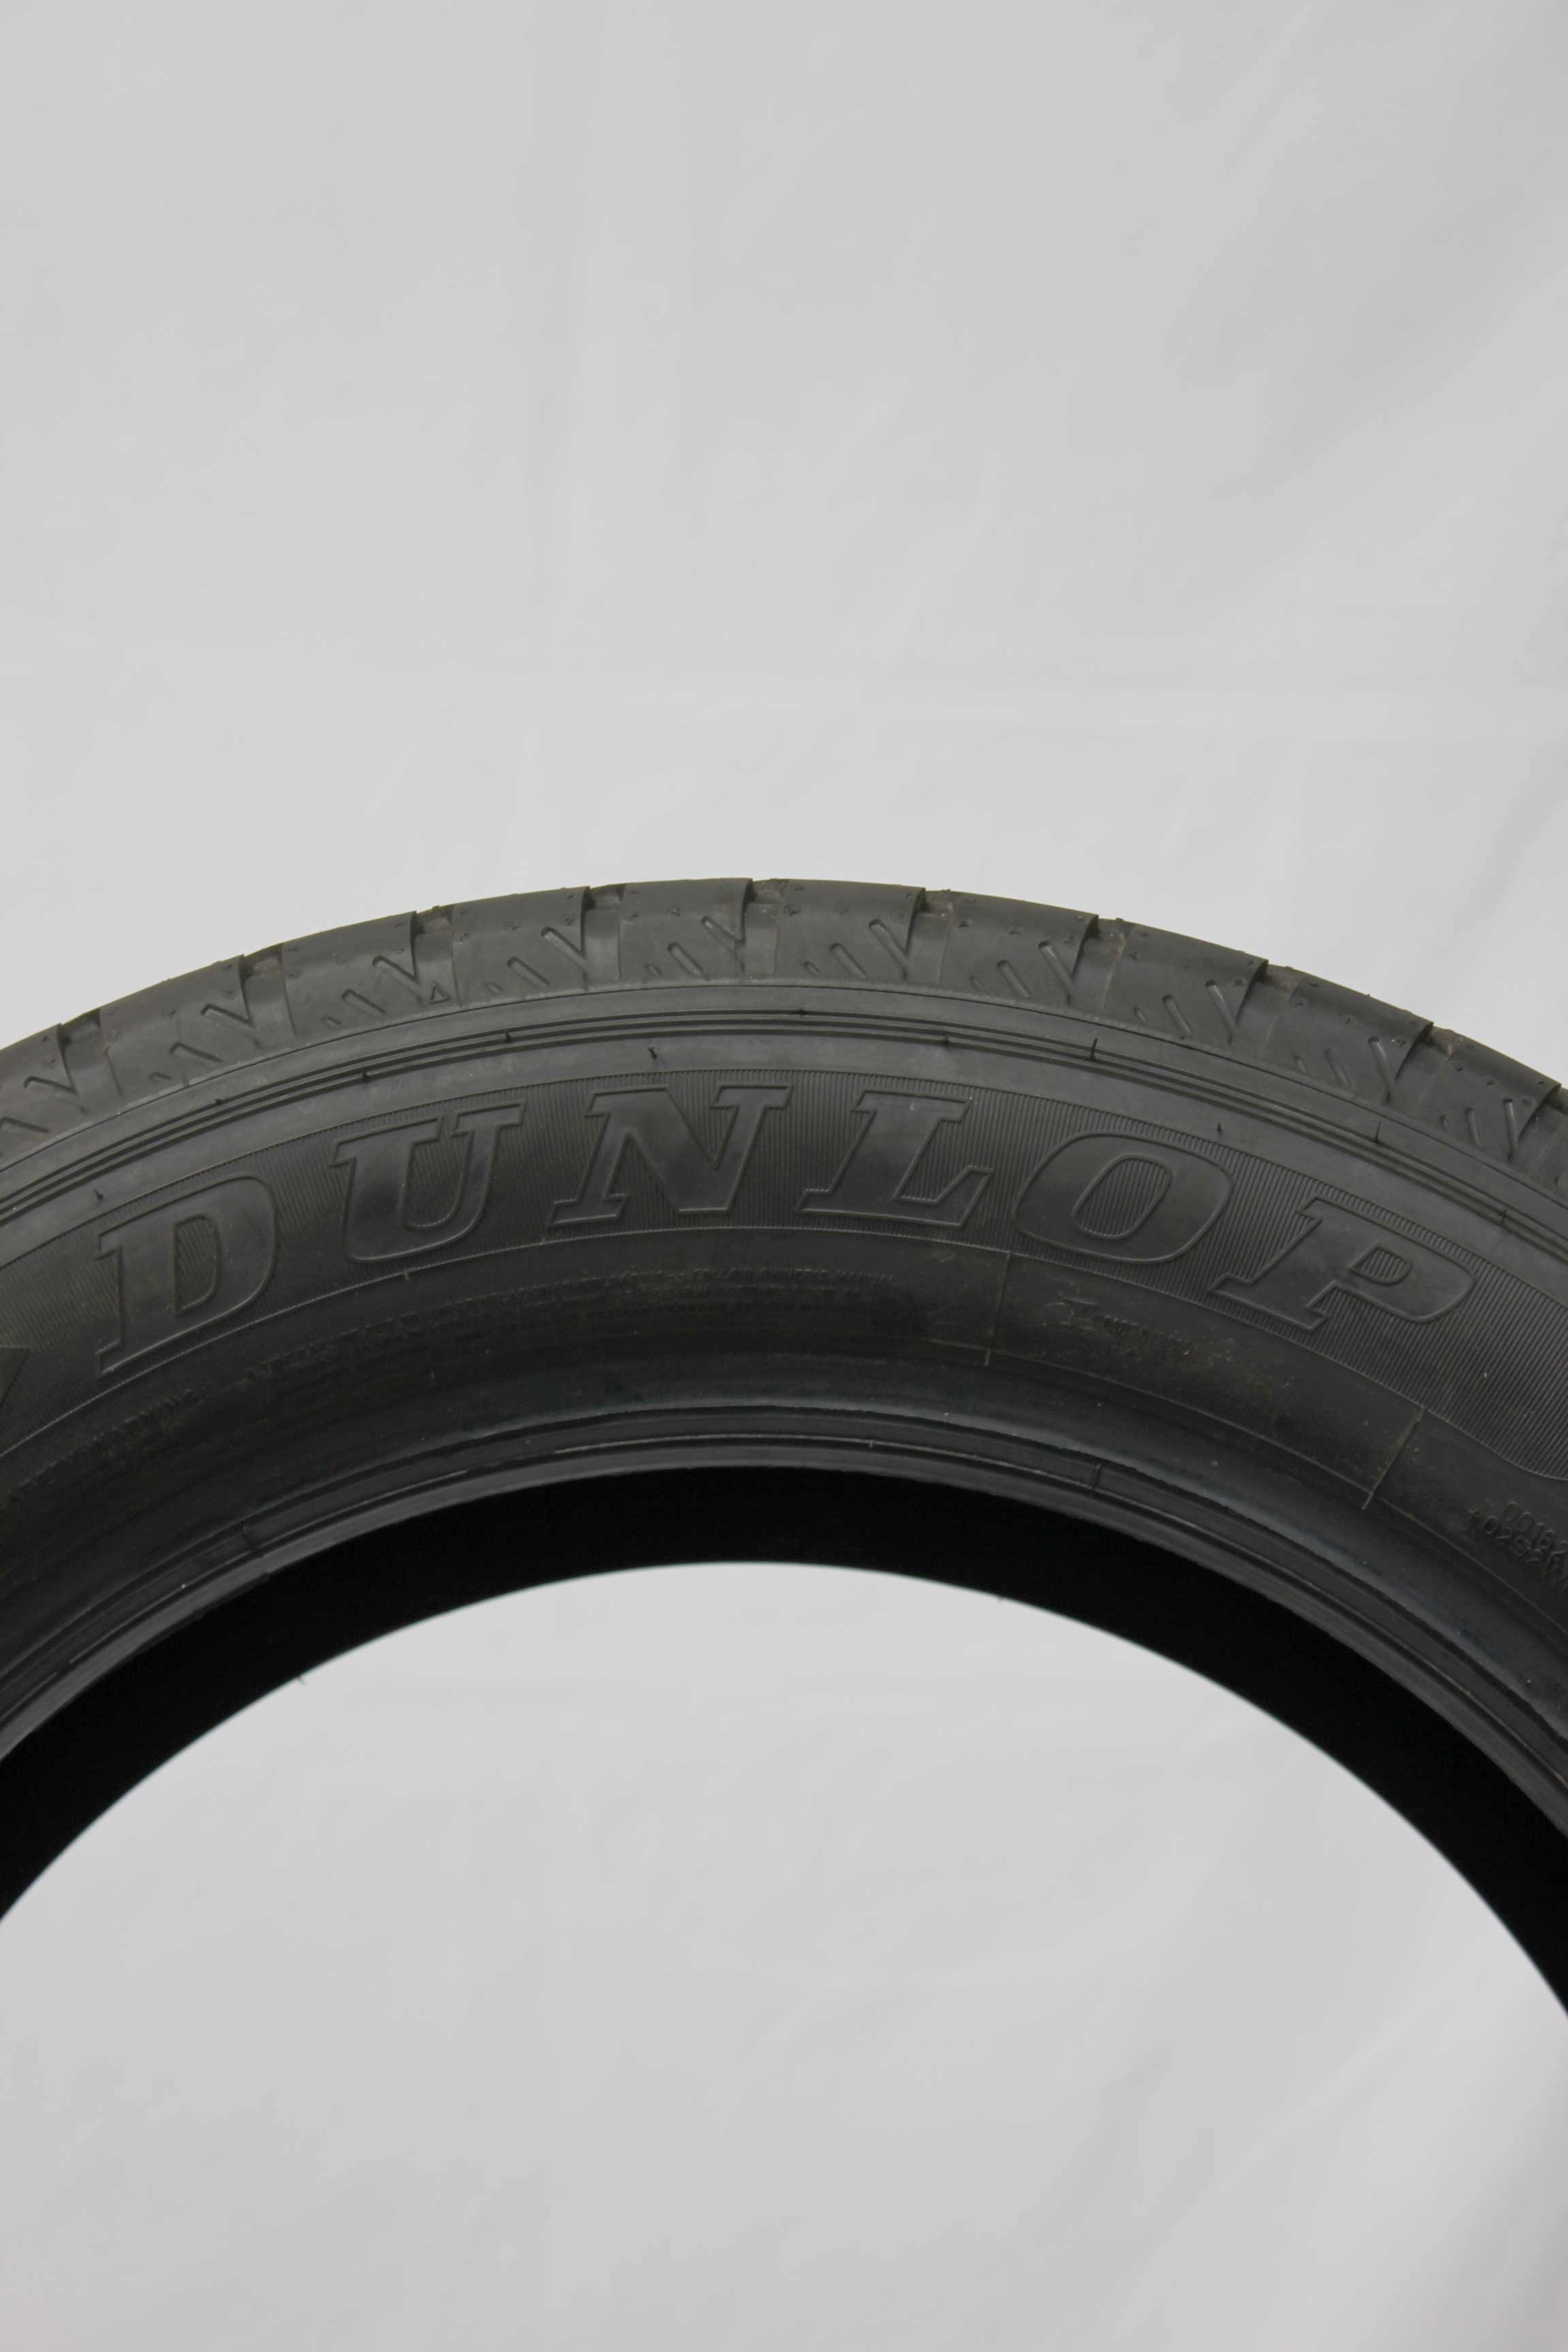 Sommerreifen-Dunlop-Econodrive-225-55-R17-109-107H-1_(6)